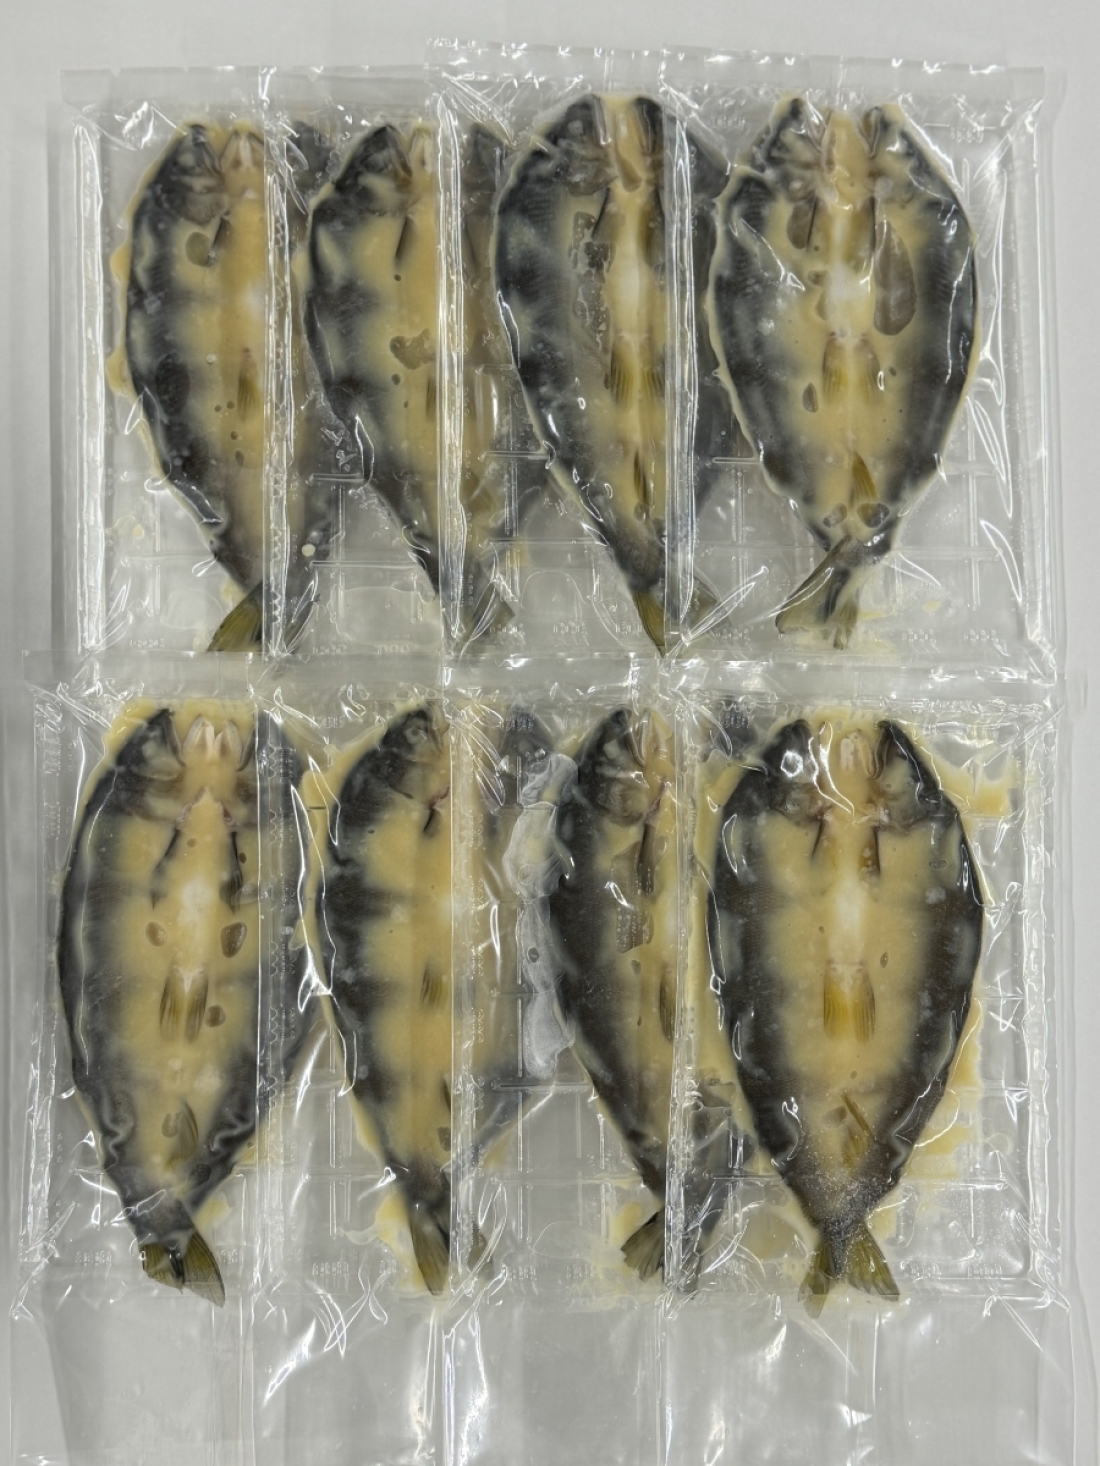 鮎の西京味噌粕漬け 8尾セット1